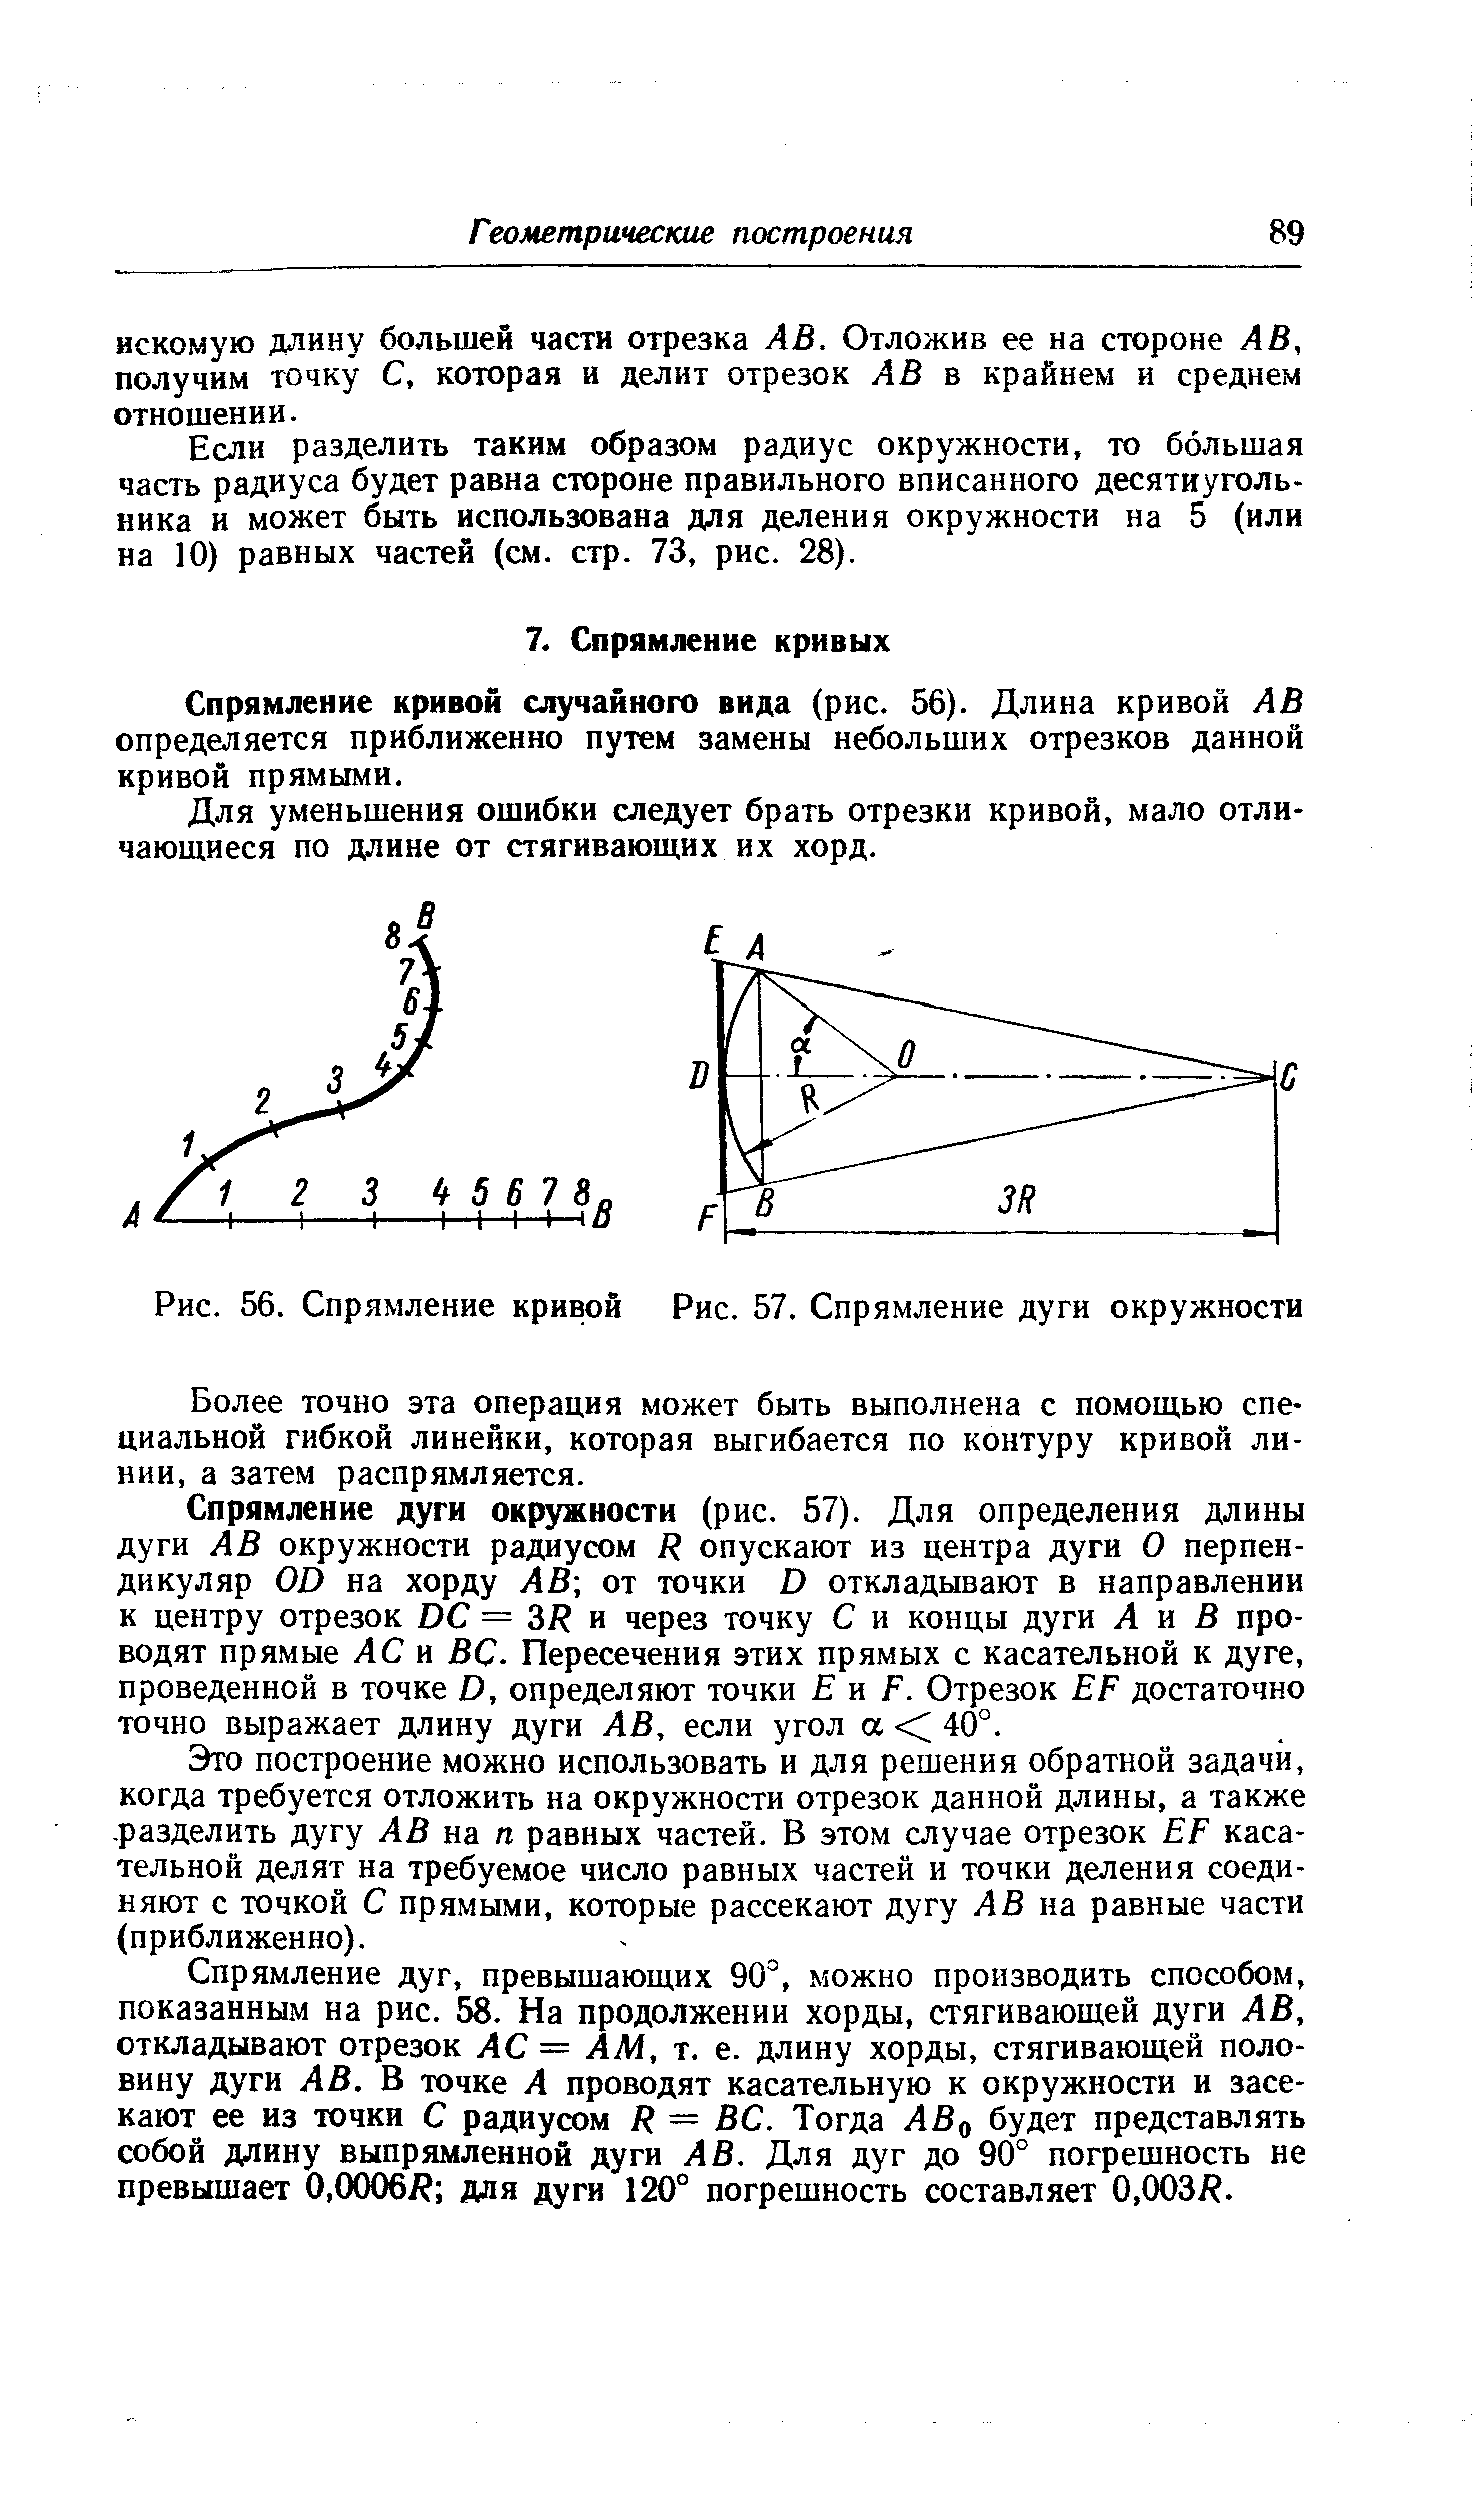 Спрямление кривой случайного вида (рис. 56). Длина кривой АВ определяется приближенно путем замены небольших отрезков данной кривой прямыми.
